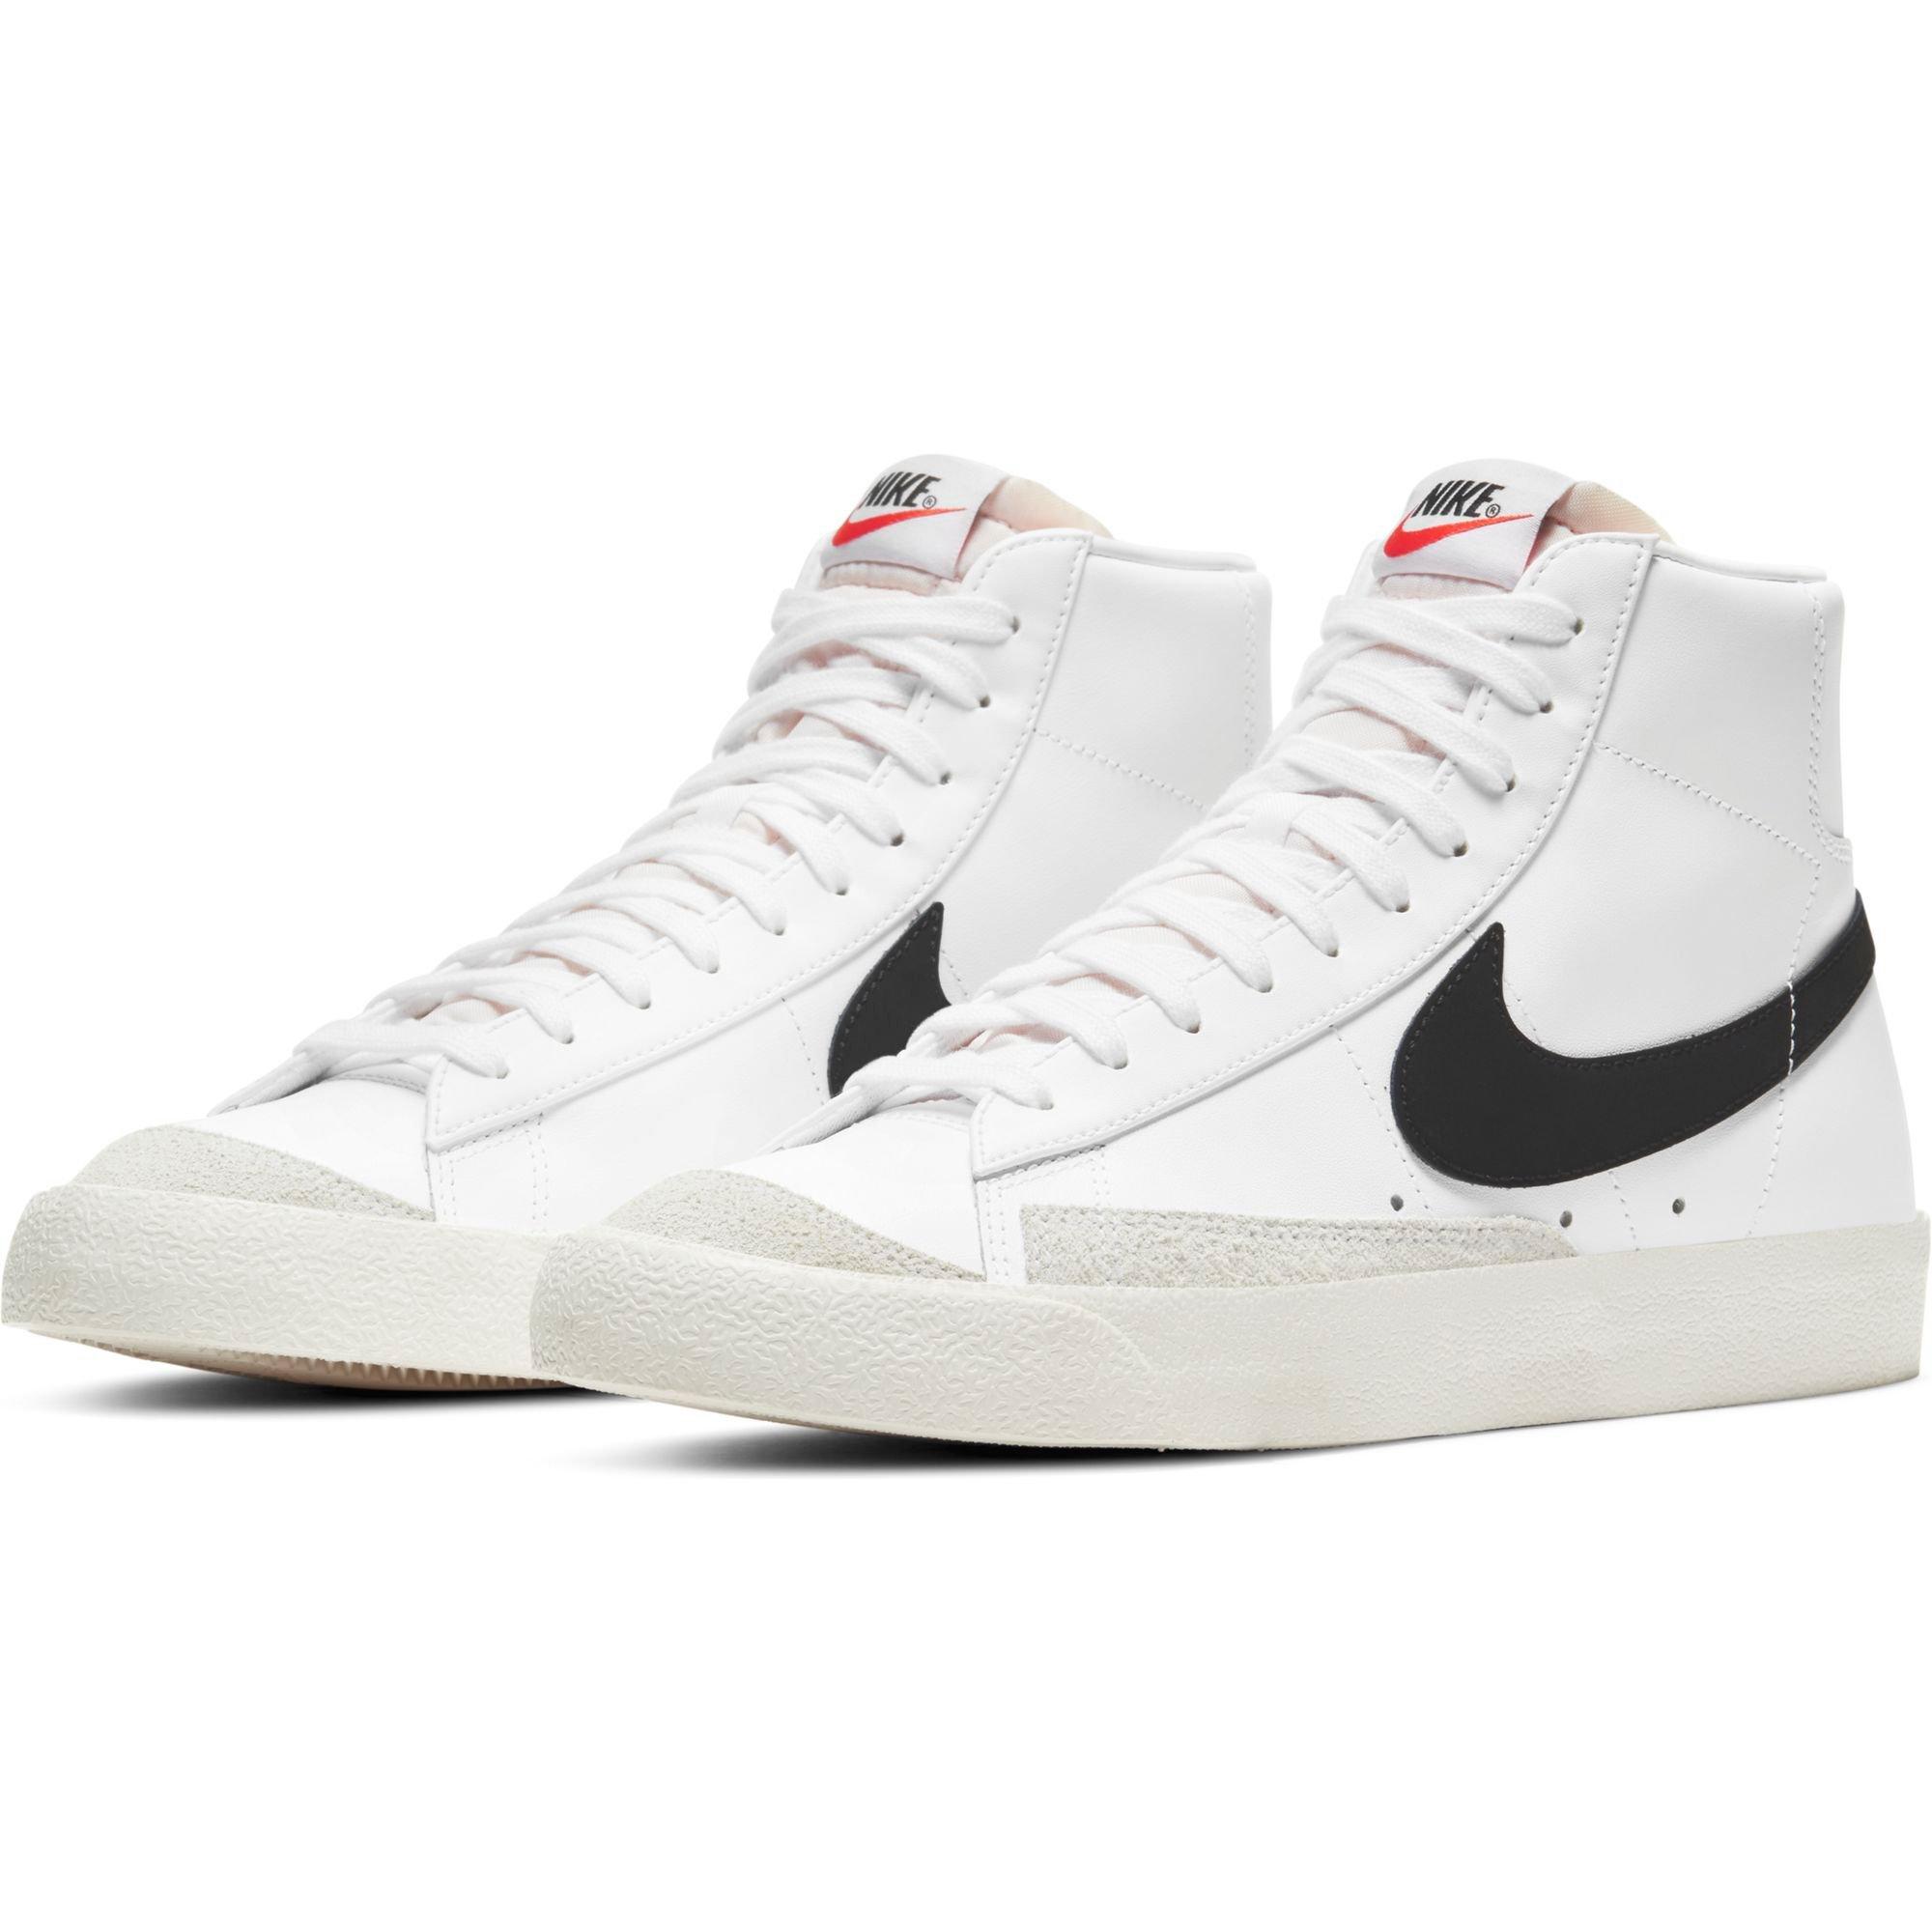 Nike Mid "White/Black" Men's Shoe